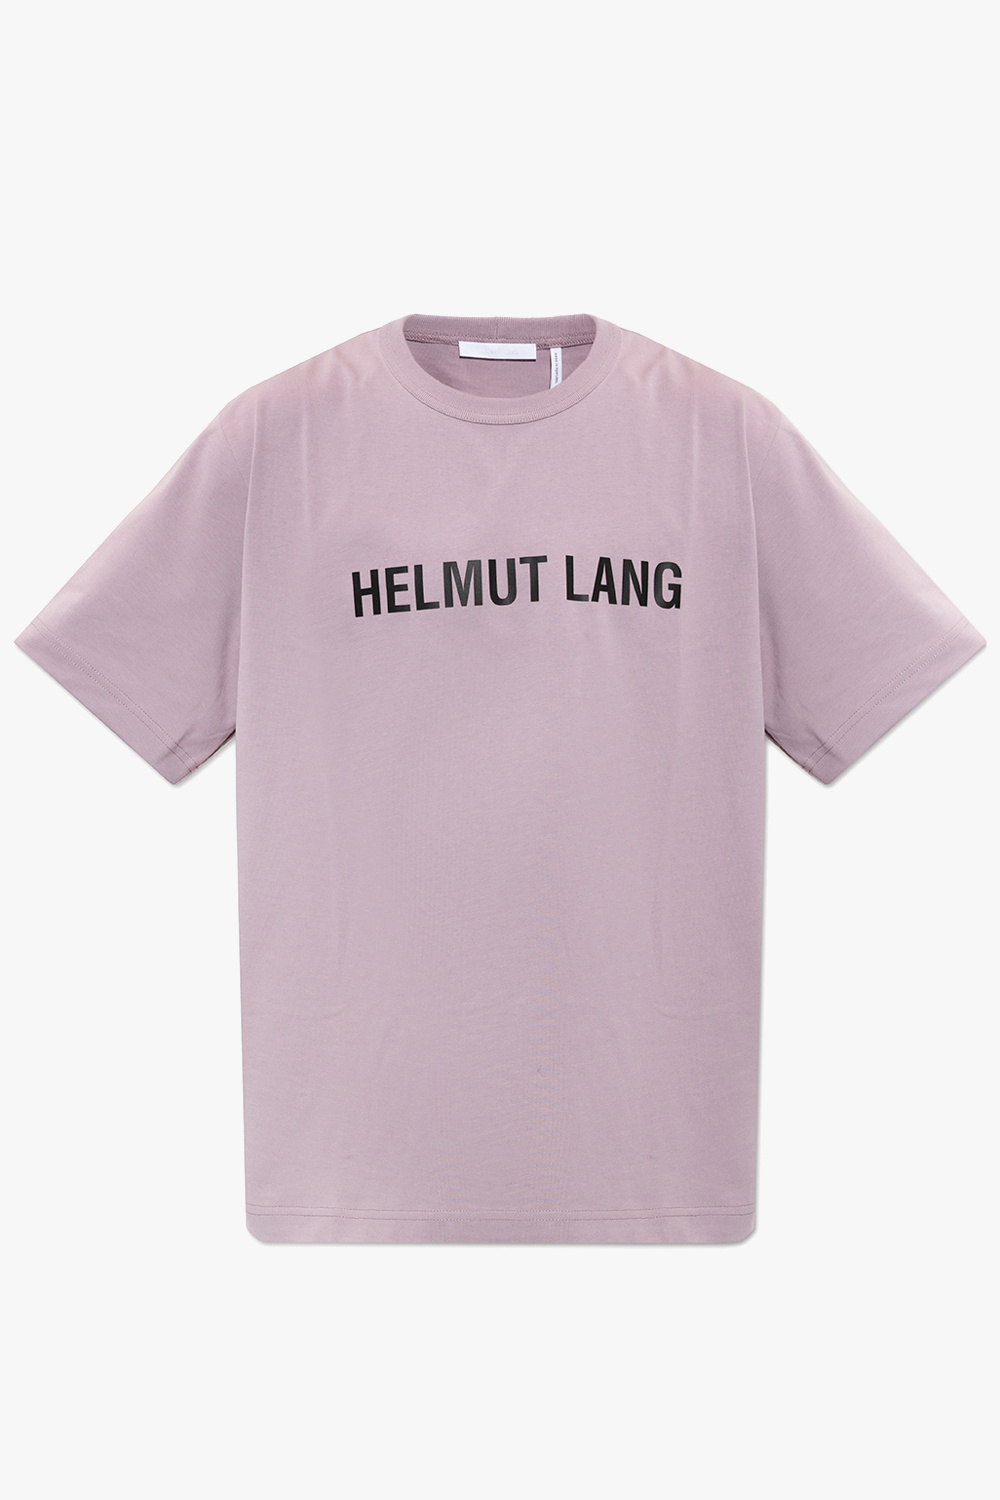 IetpShops Netherlands - Air T-Shirt Kids - shirt with logo Helmut